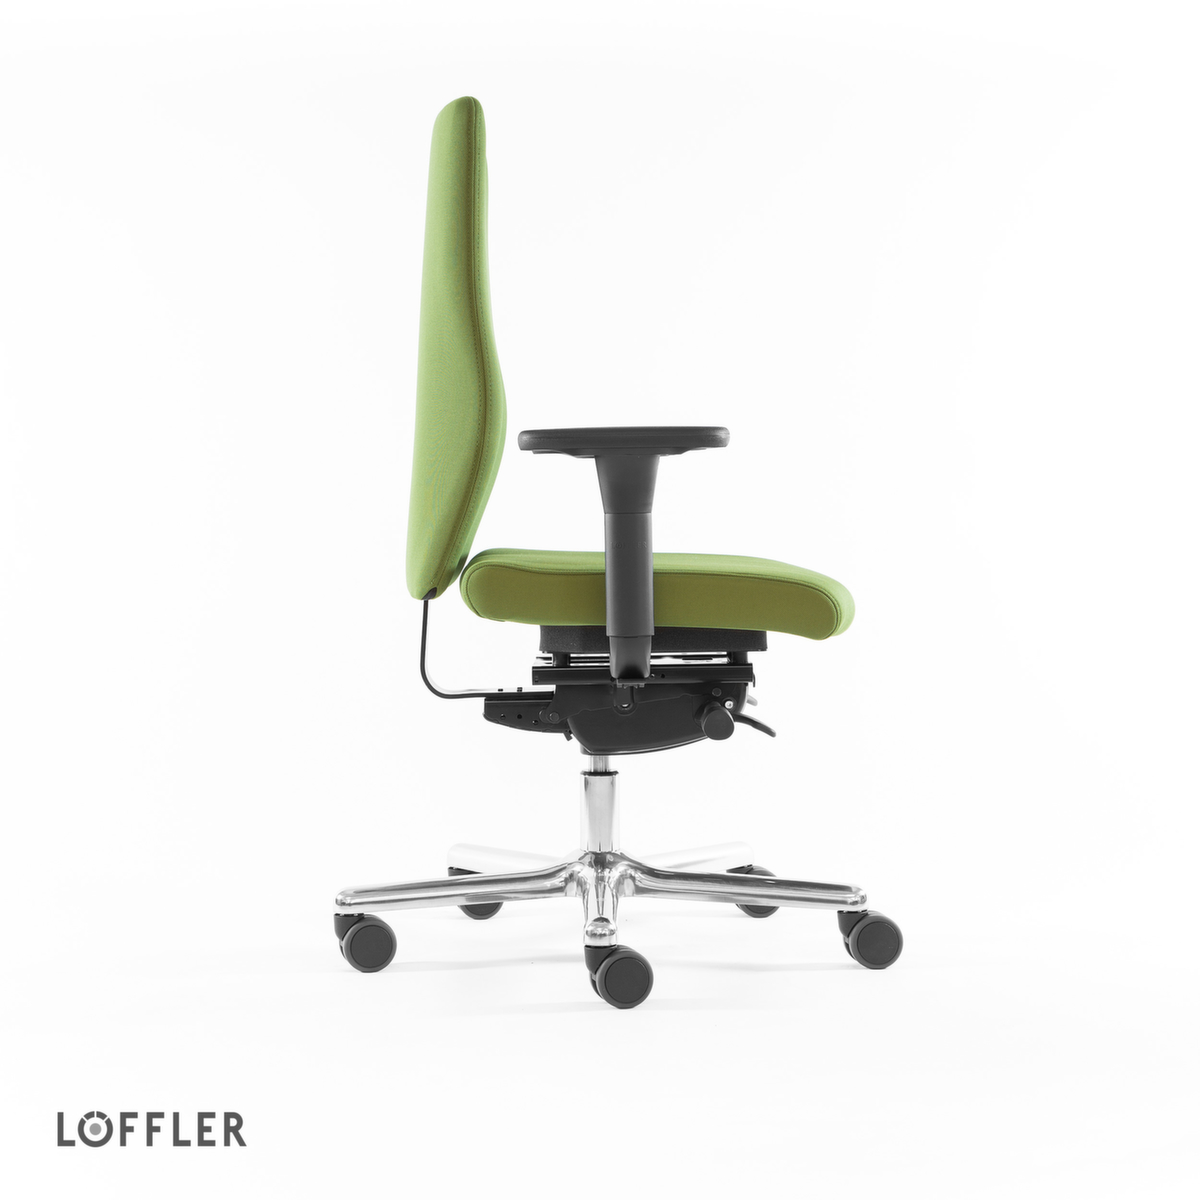 Löffler Bürodrehstuhl mit viskoelastischem Sitz, grün Standard 3 ZOOM